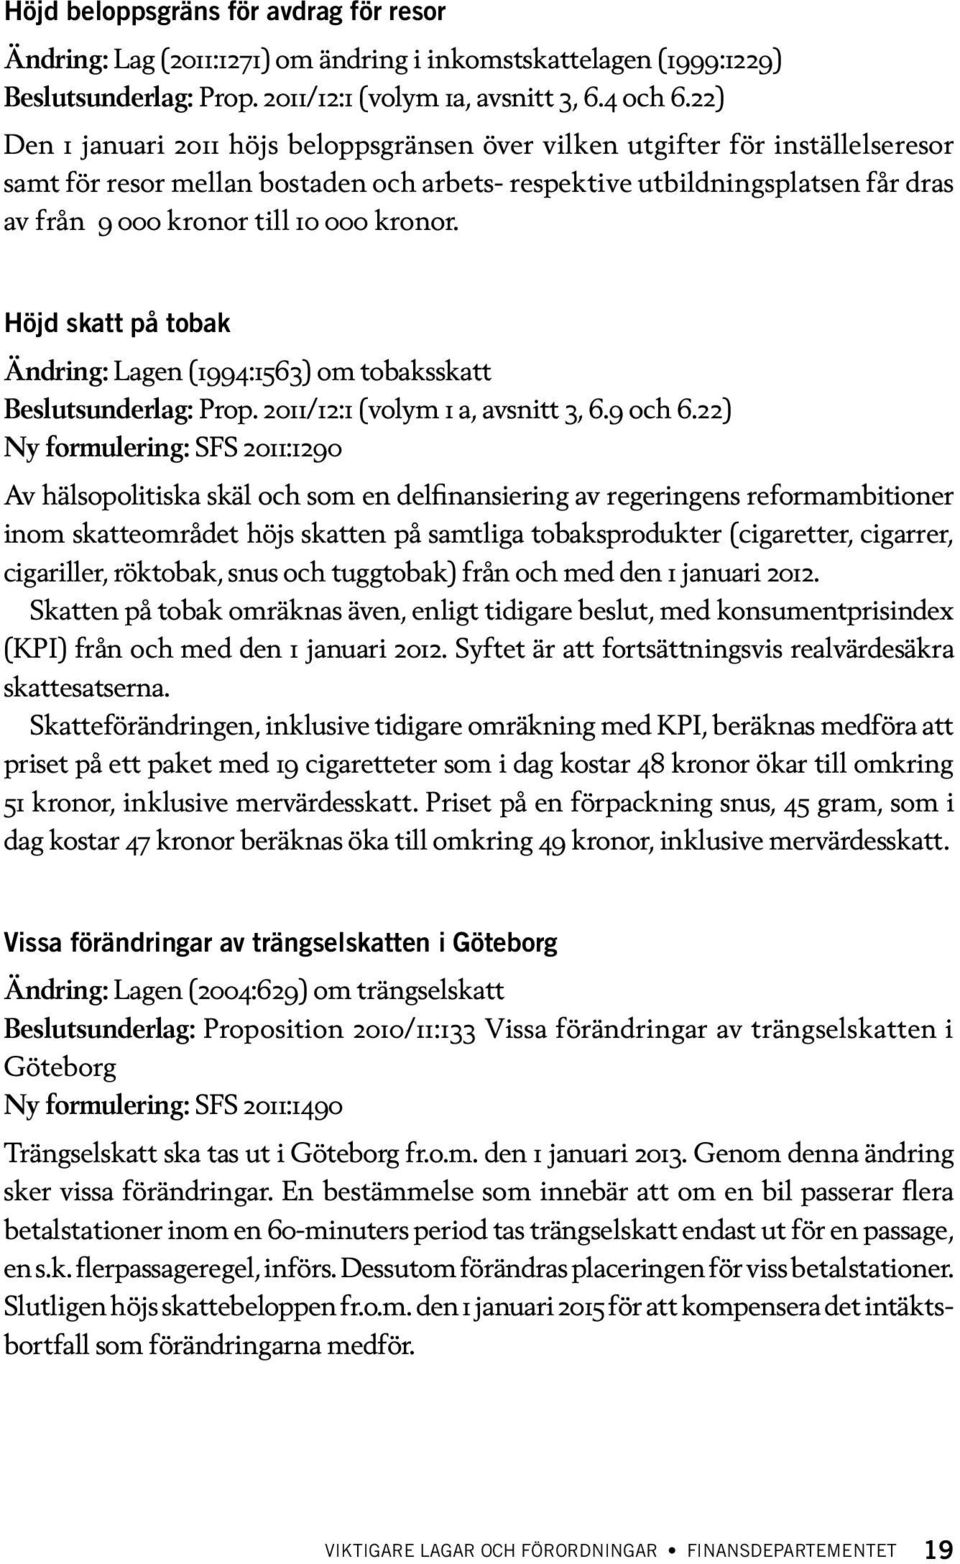 kronor. Höjd skatt på tobak Ändring: Lagen (1994:1563) om tobaksskatt Beslutsunderlag: Prop. 2011/12:1 (volym 1 a, avsnitt 3, 6.9 och 6.